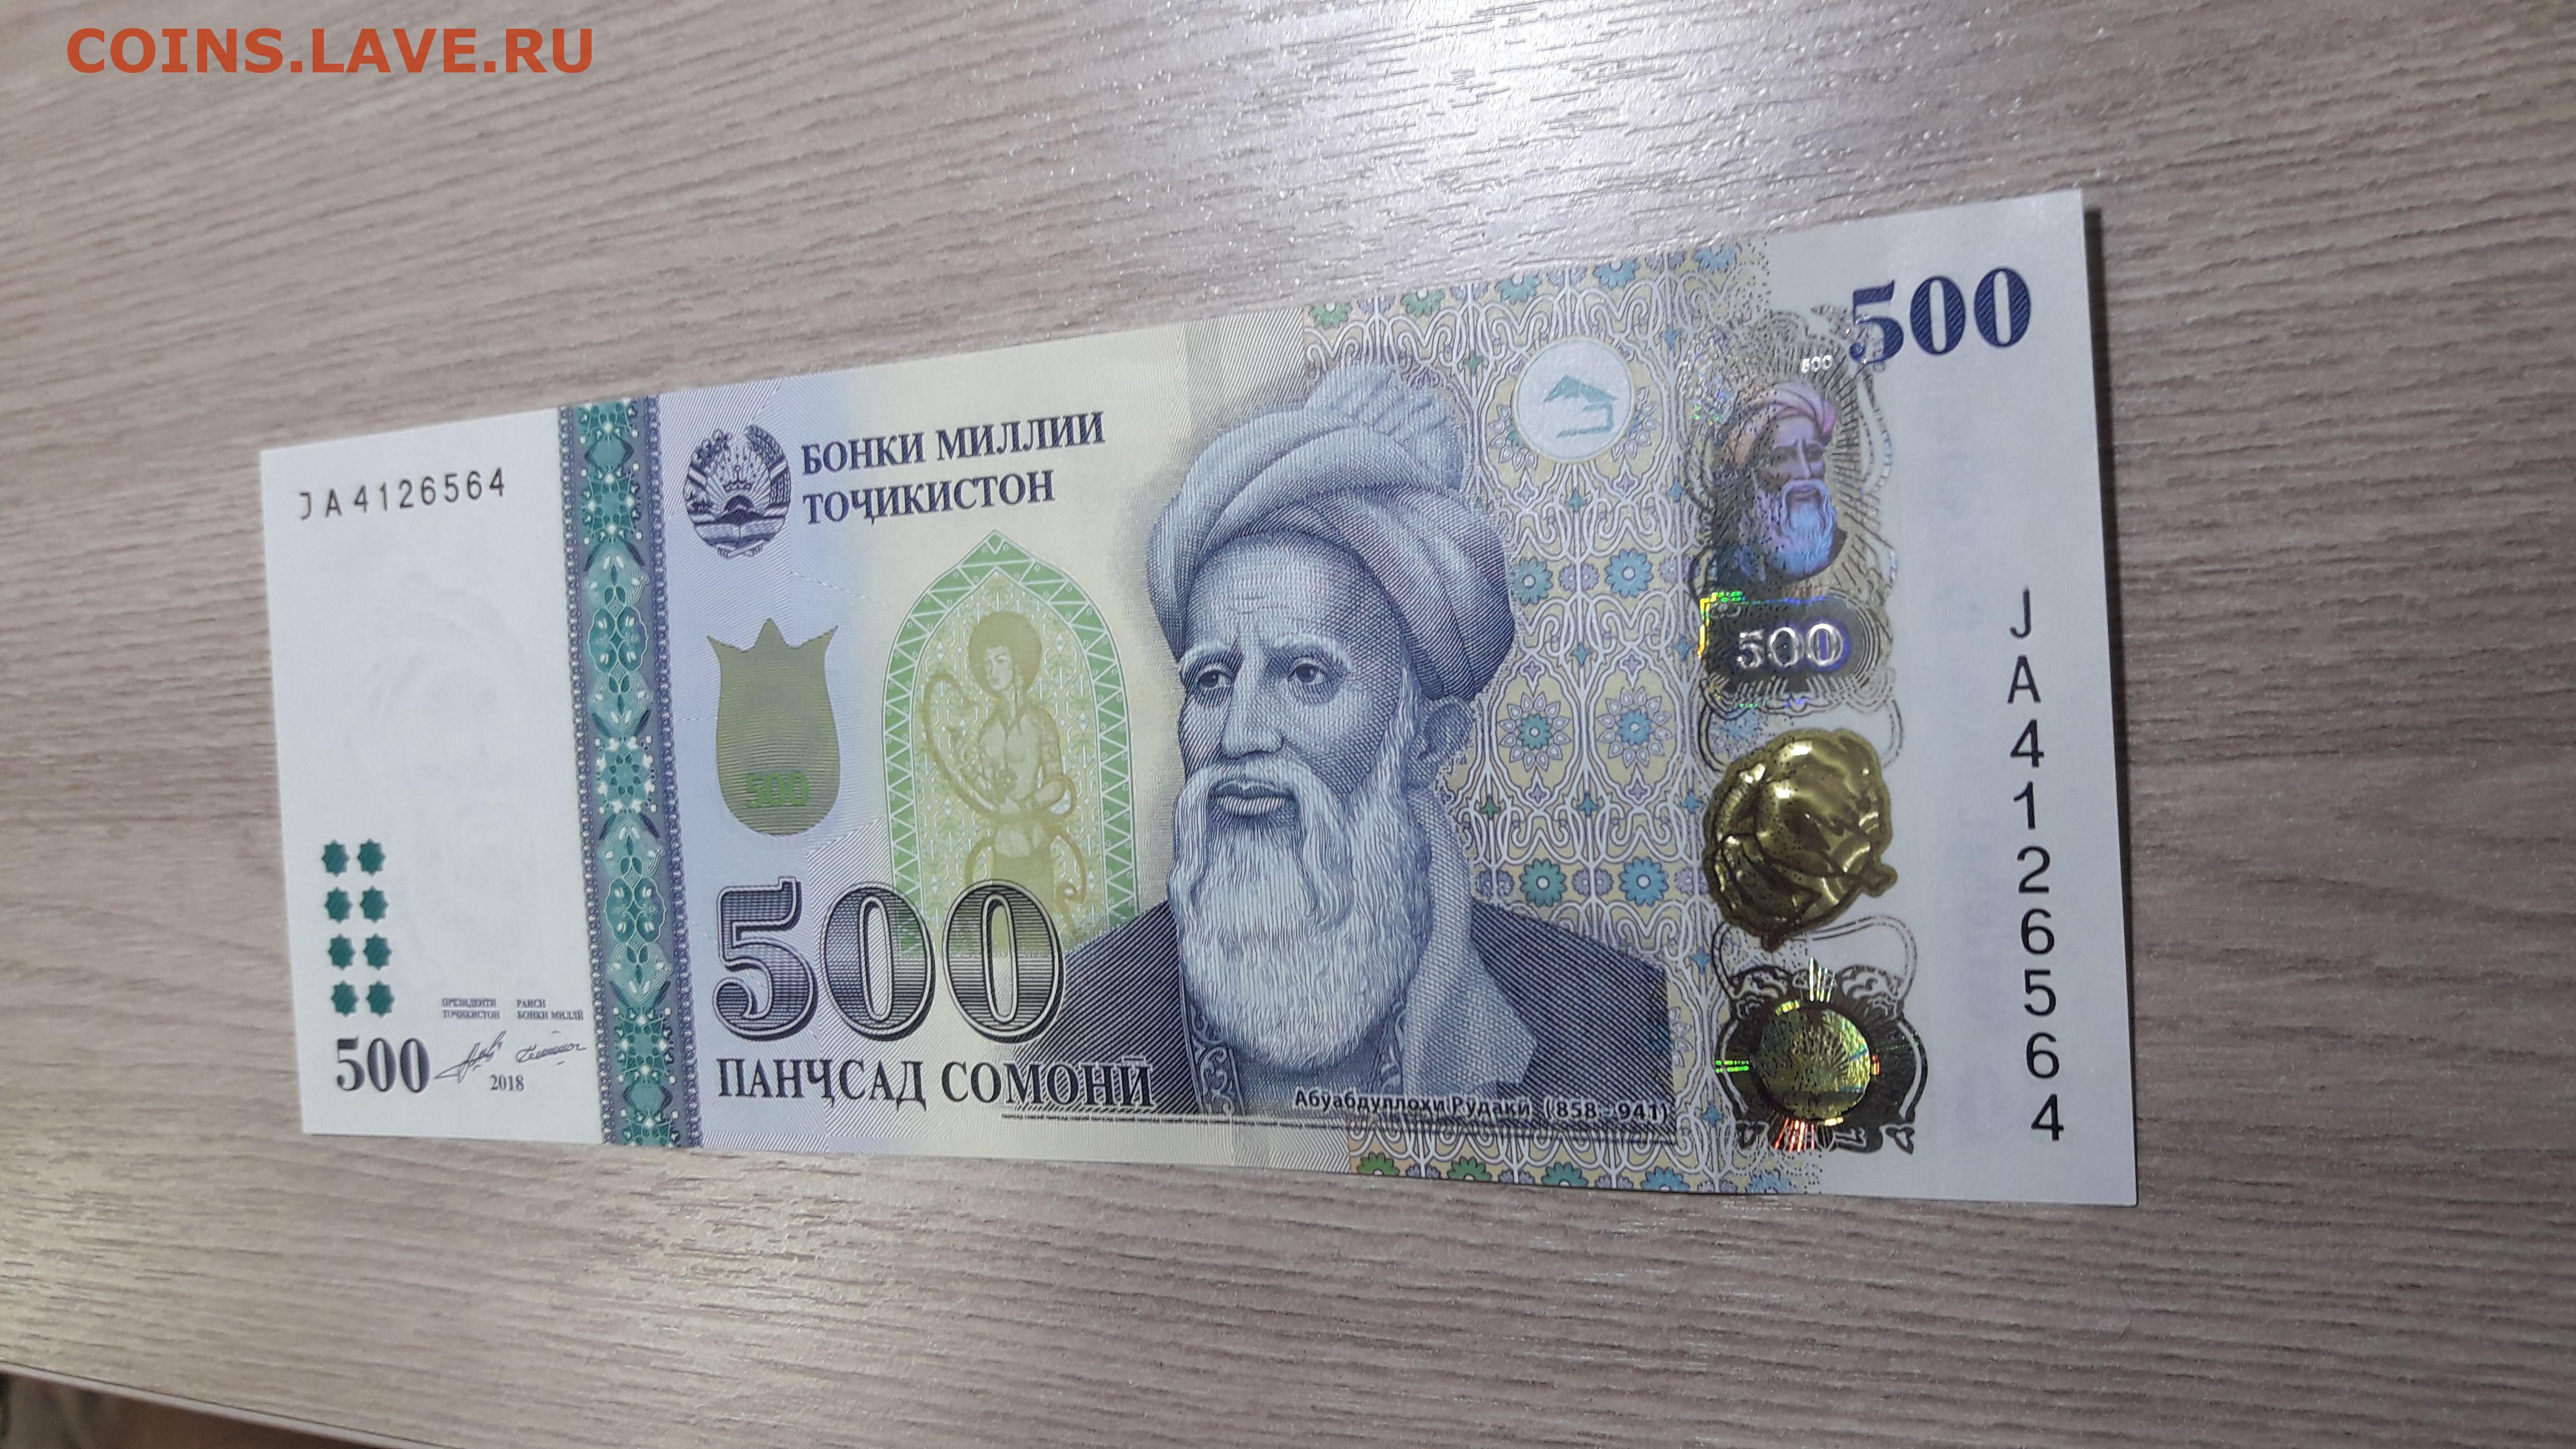 Сомони в сумах. Таджикский купюры 500 Сомони. Деньги Таджикистана 500 Сомони. 1000 Сомони. Купюра Таджикистана 500 Сомони.